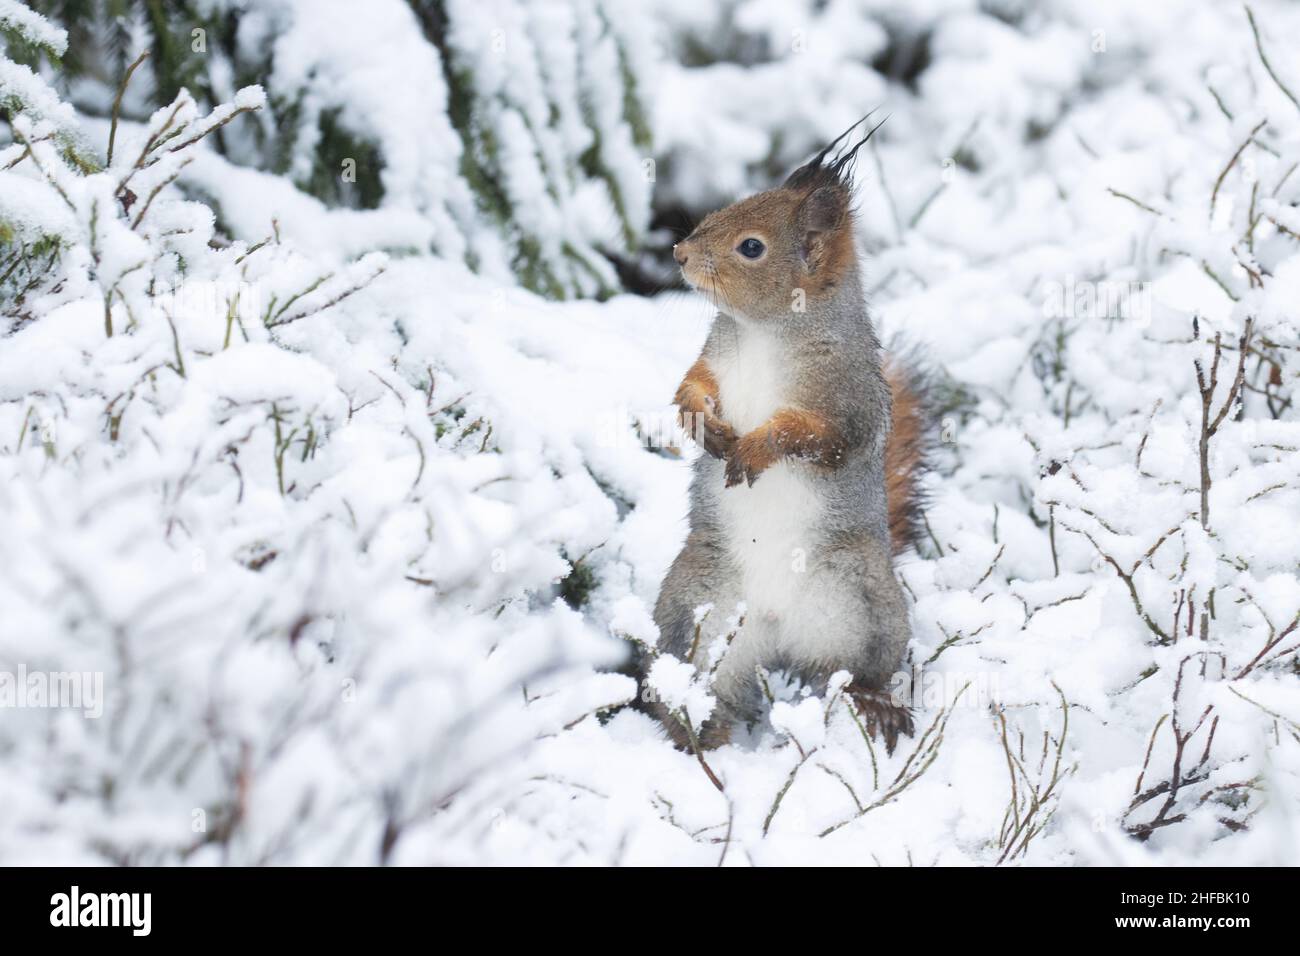 Ängstliches rotes Eichhörnchen, Sciurus vulgaris, steht auf einem verschneiten Boden im estnischen borealen Wald. Stockfoto